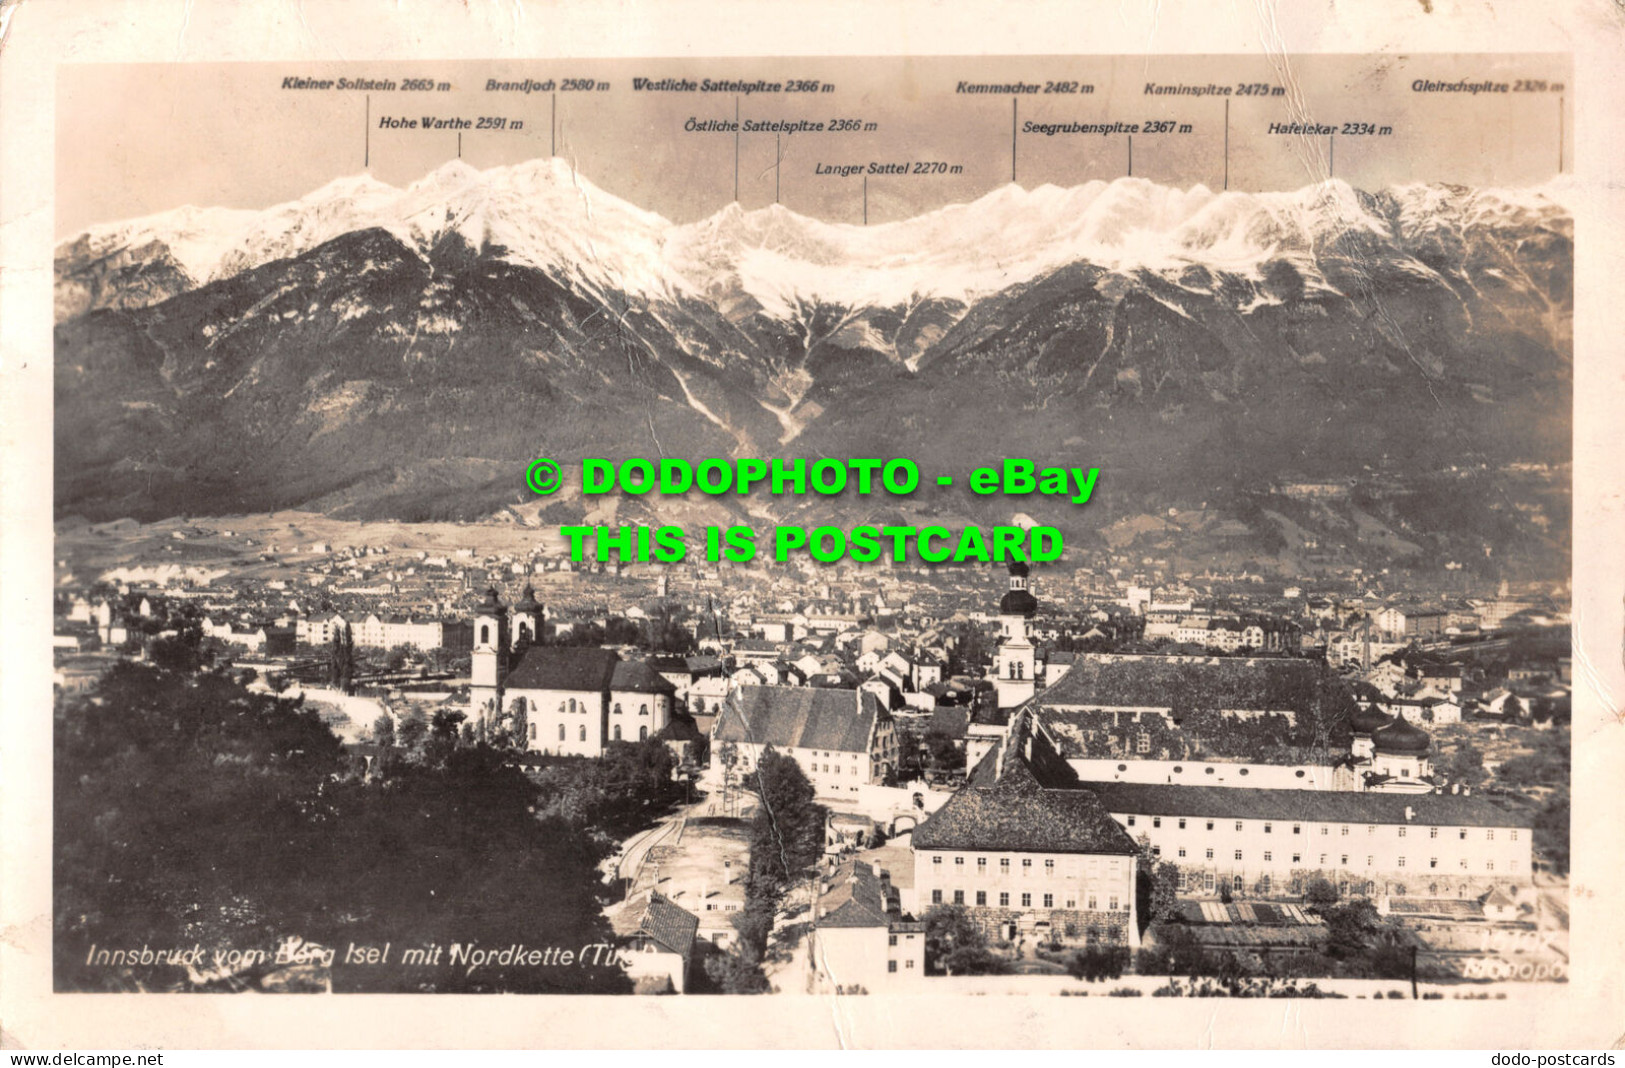 R485390 Innsbruck Vom Berg Isel Mit Nordkette. Tirol. 15107. W. Monopol. A. G. S - Welt